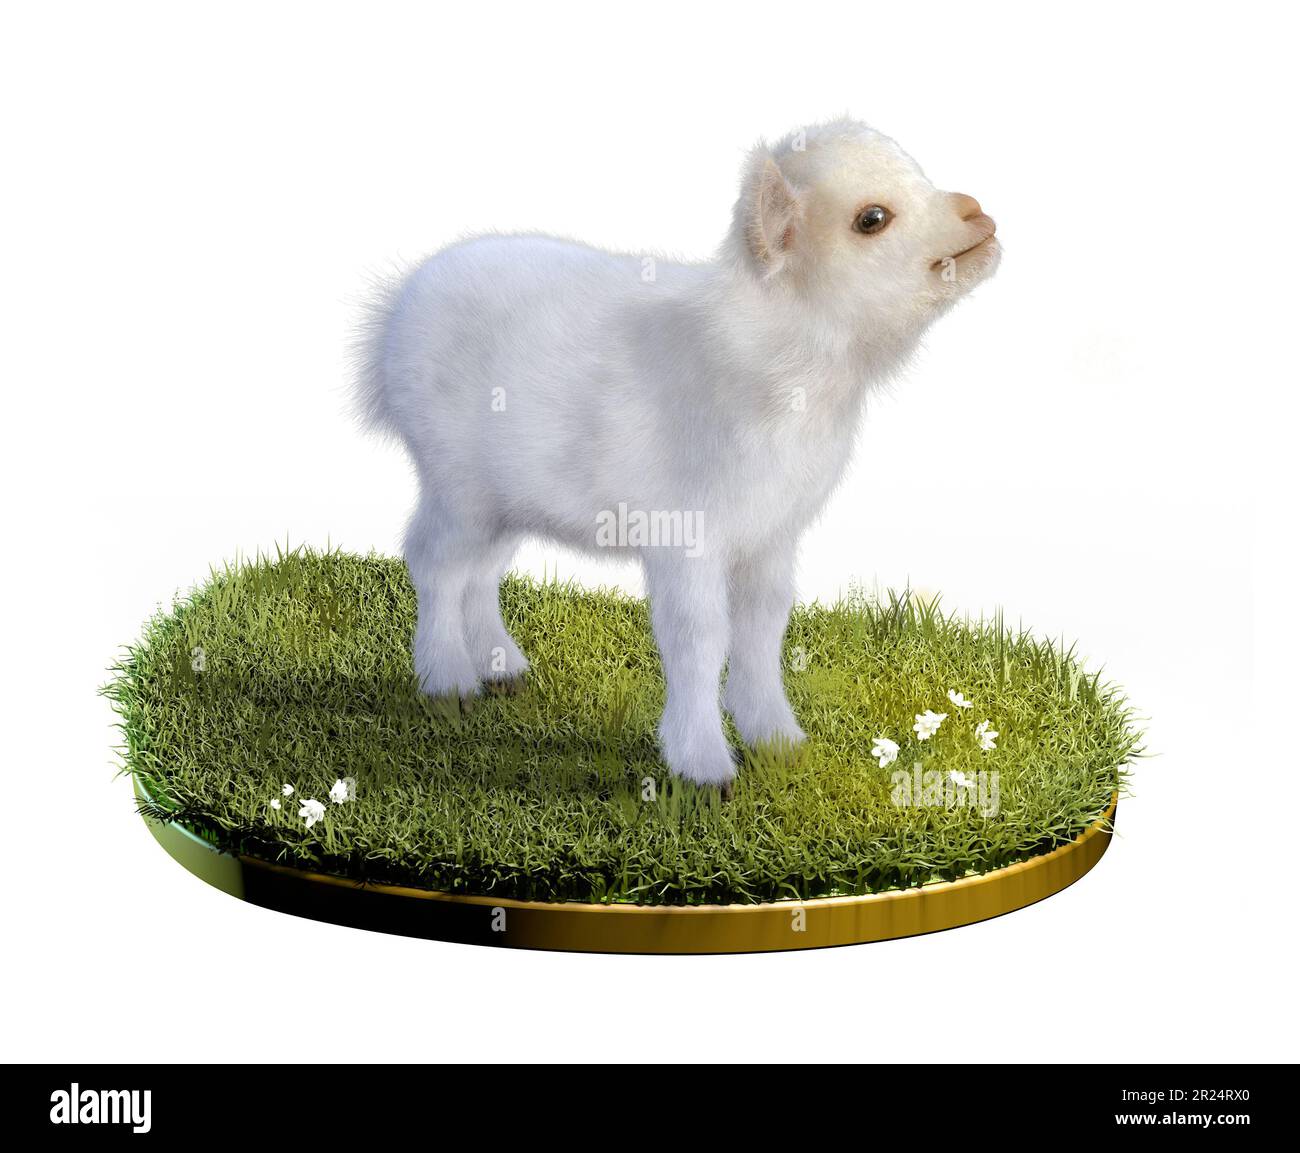 Bébé chèvre debout dans un patch d'herbe verte. Illustration numérique, rendu 3D. Banque D'Images